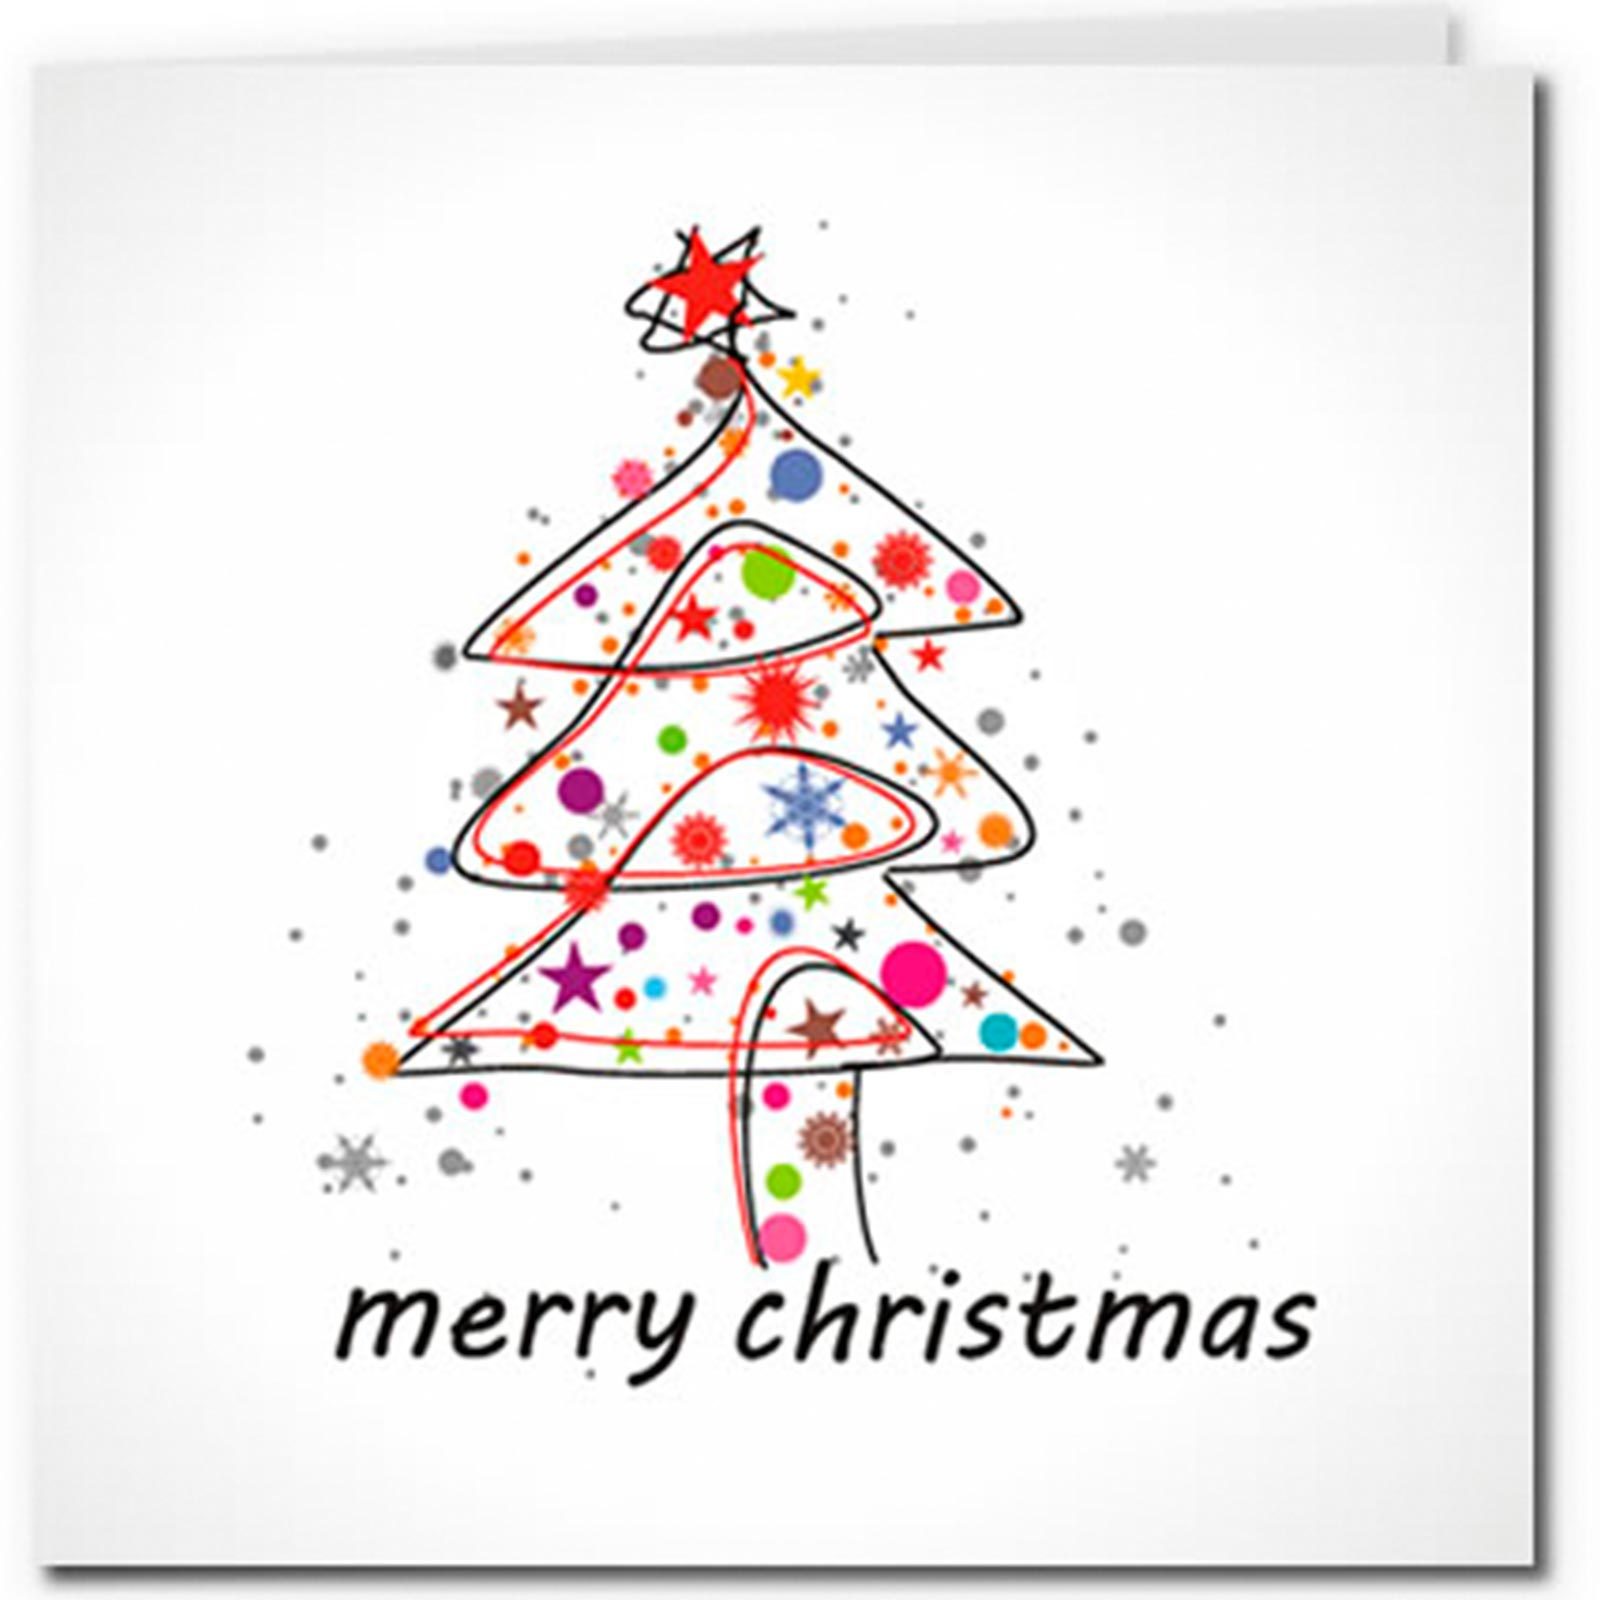 Free Printable Christmas Card Images - Printable Templates